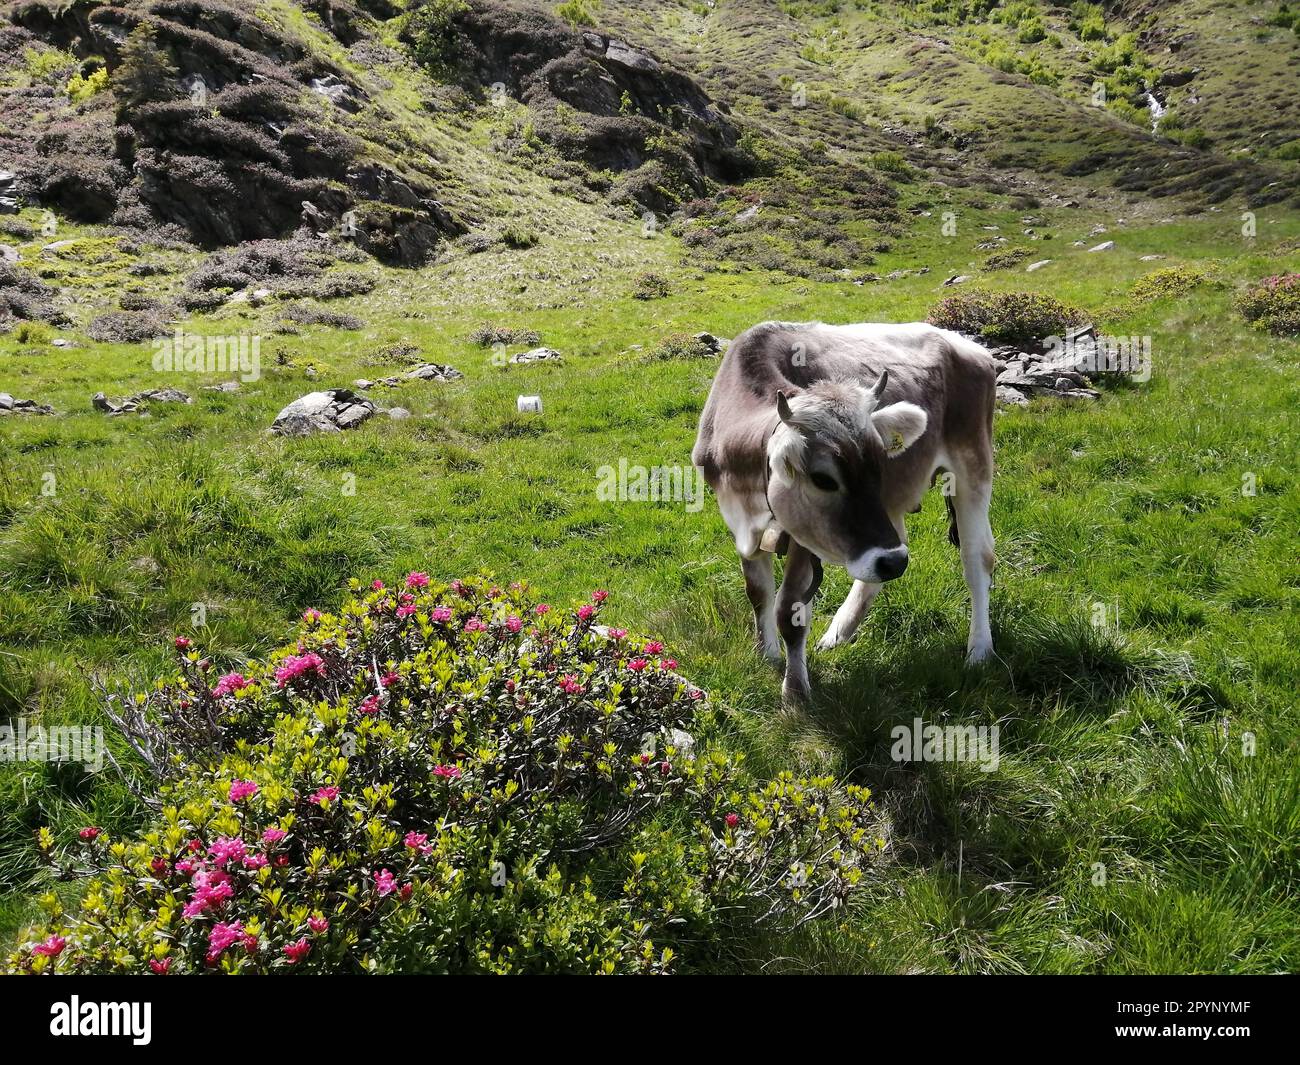 Eine grüne Wiese in der Wildnis, voller Wachstum und Blumen, auf der die Kühe friedlich grasen; Alm mit Kühen Stock Photo